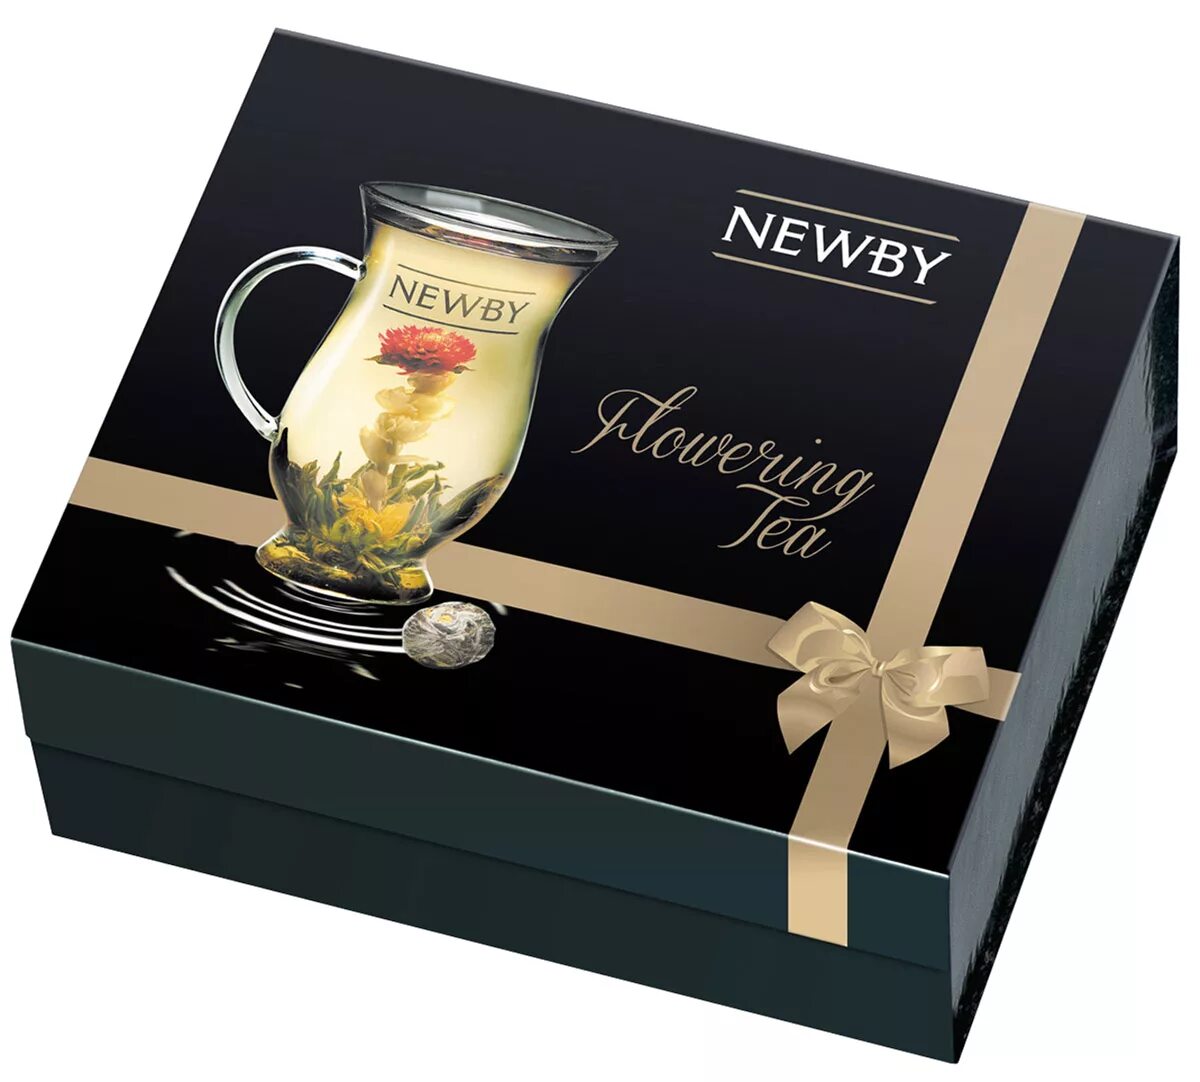 Чай Newby подарочный набор. Чай Newby набор чайный. Чай черный Newby Black Teas ассорти подарочный набор. Чай черный Newby Crown ассорти подарочный набор. Купить чай набор в пакетиках